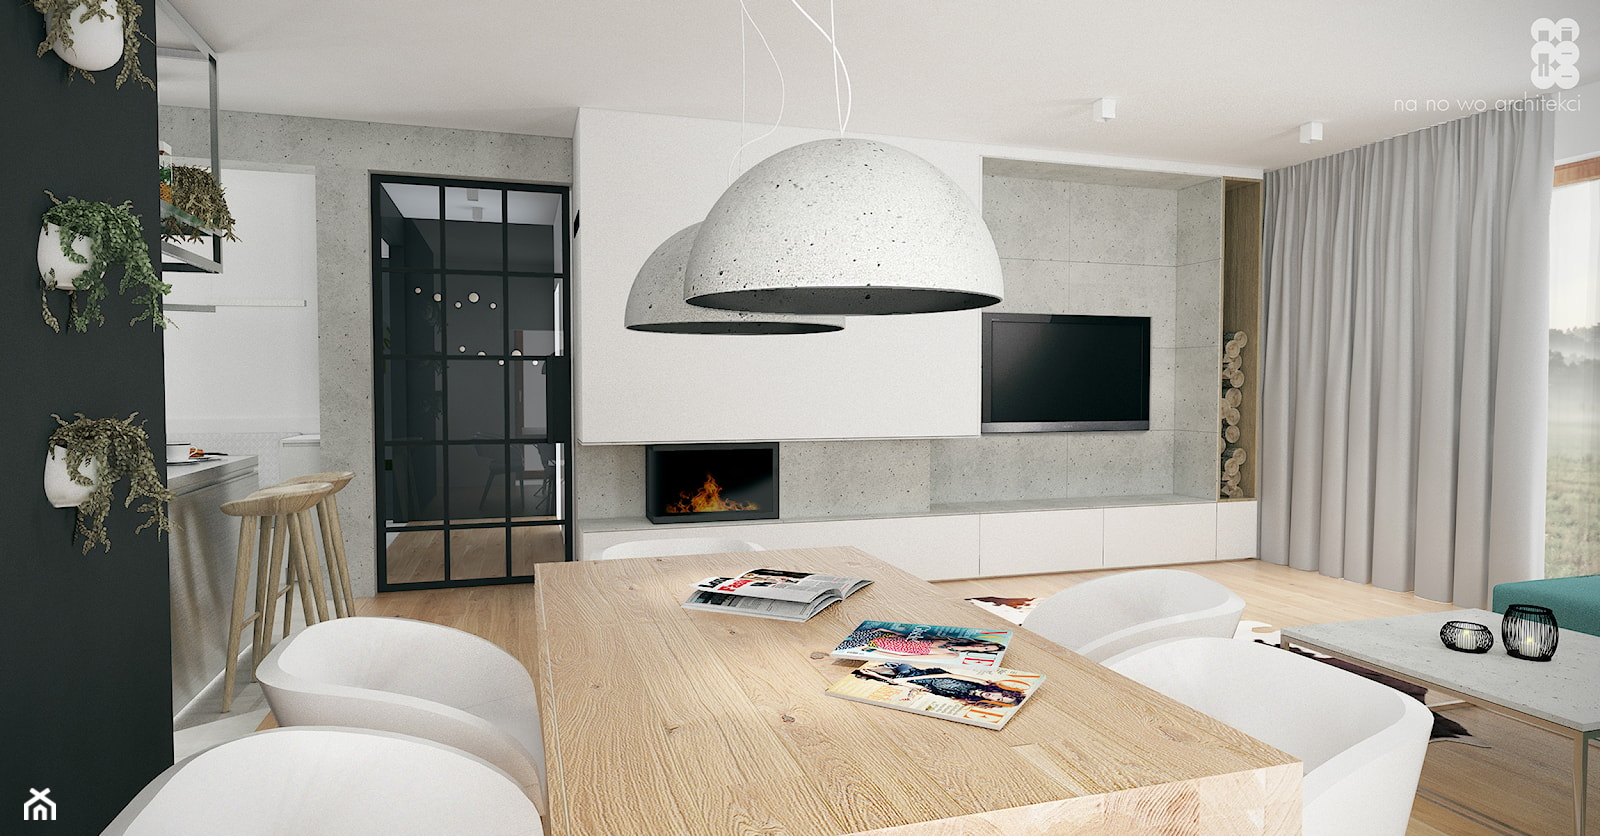 BRZEG DOLNY_projekt - Średnia biała czarna jadalnia w salonie w kuchni, styl skandynawski - zdjęcie od NA NO WO ARCHITEKCI - Homebook